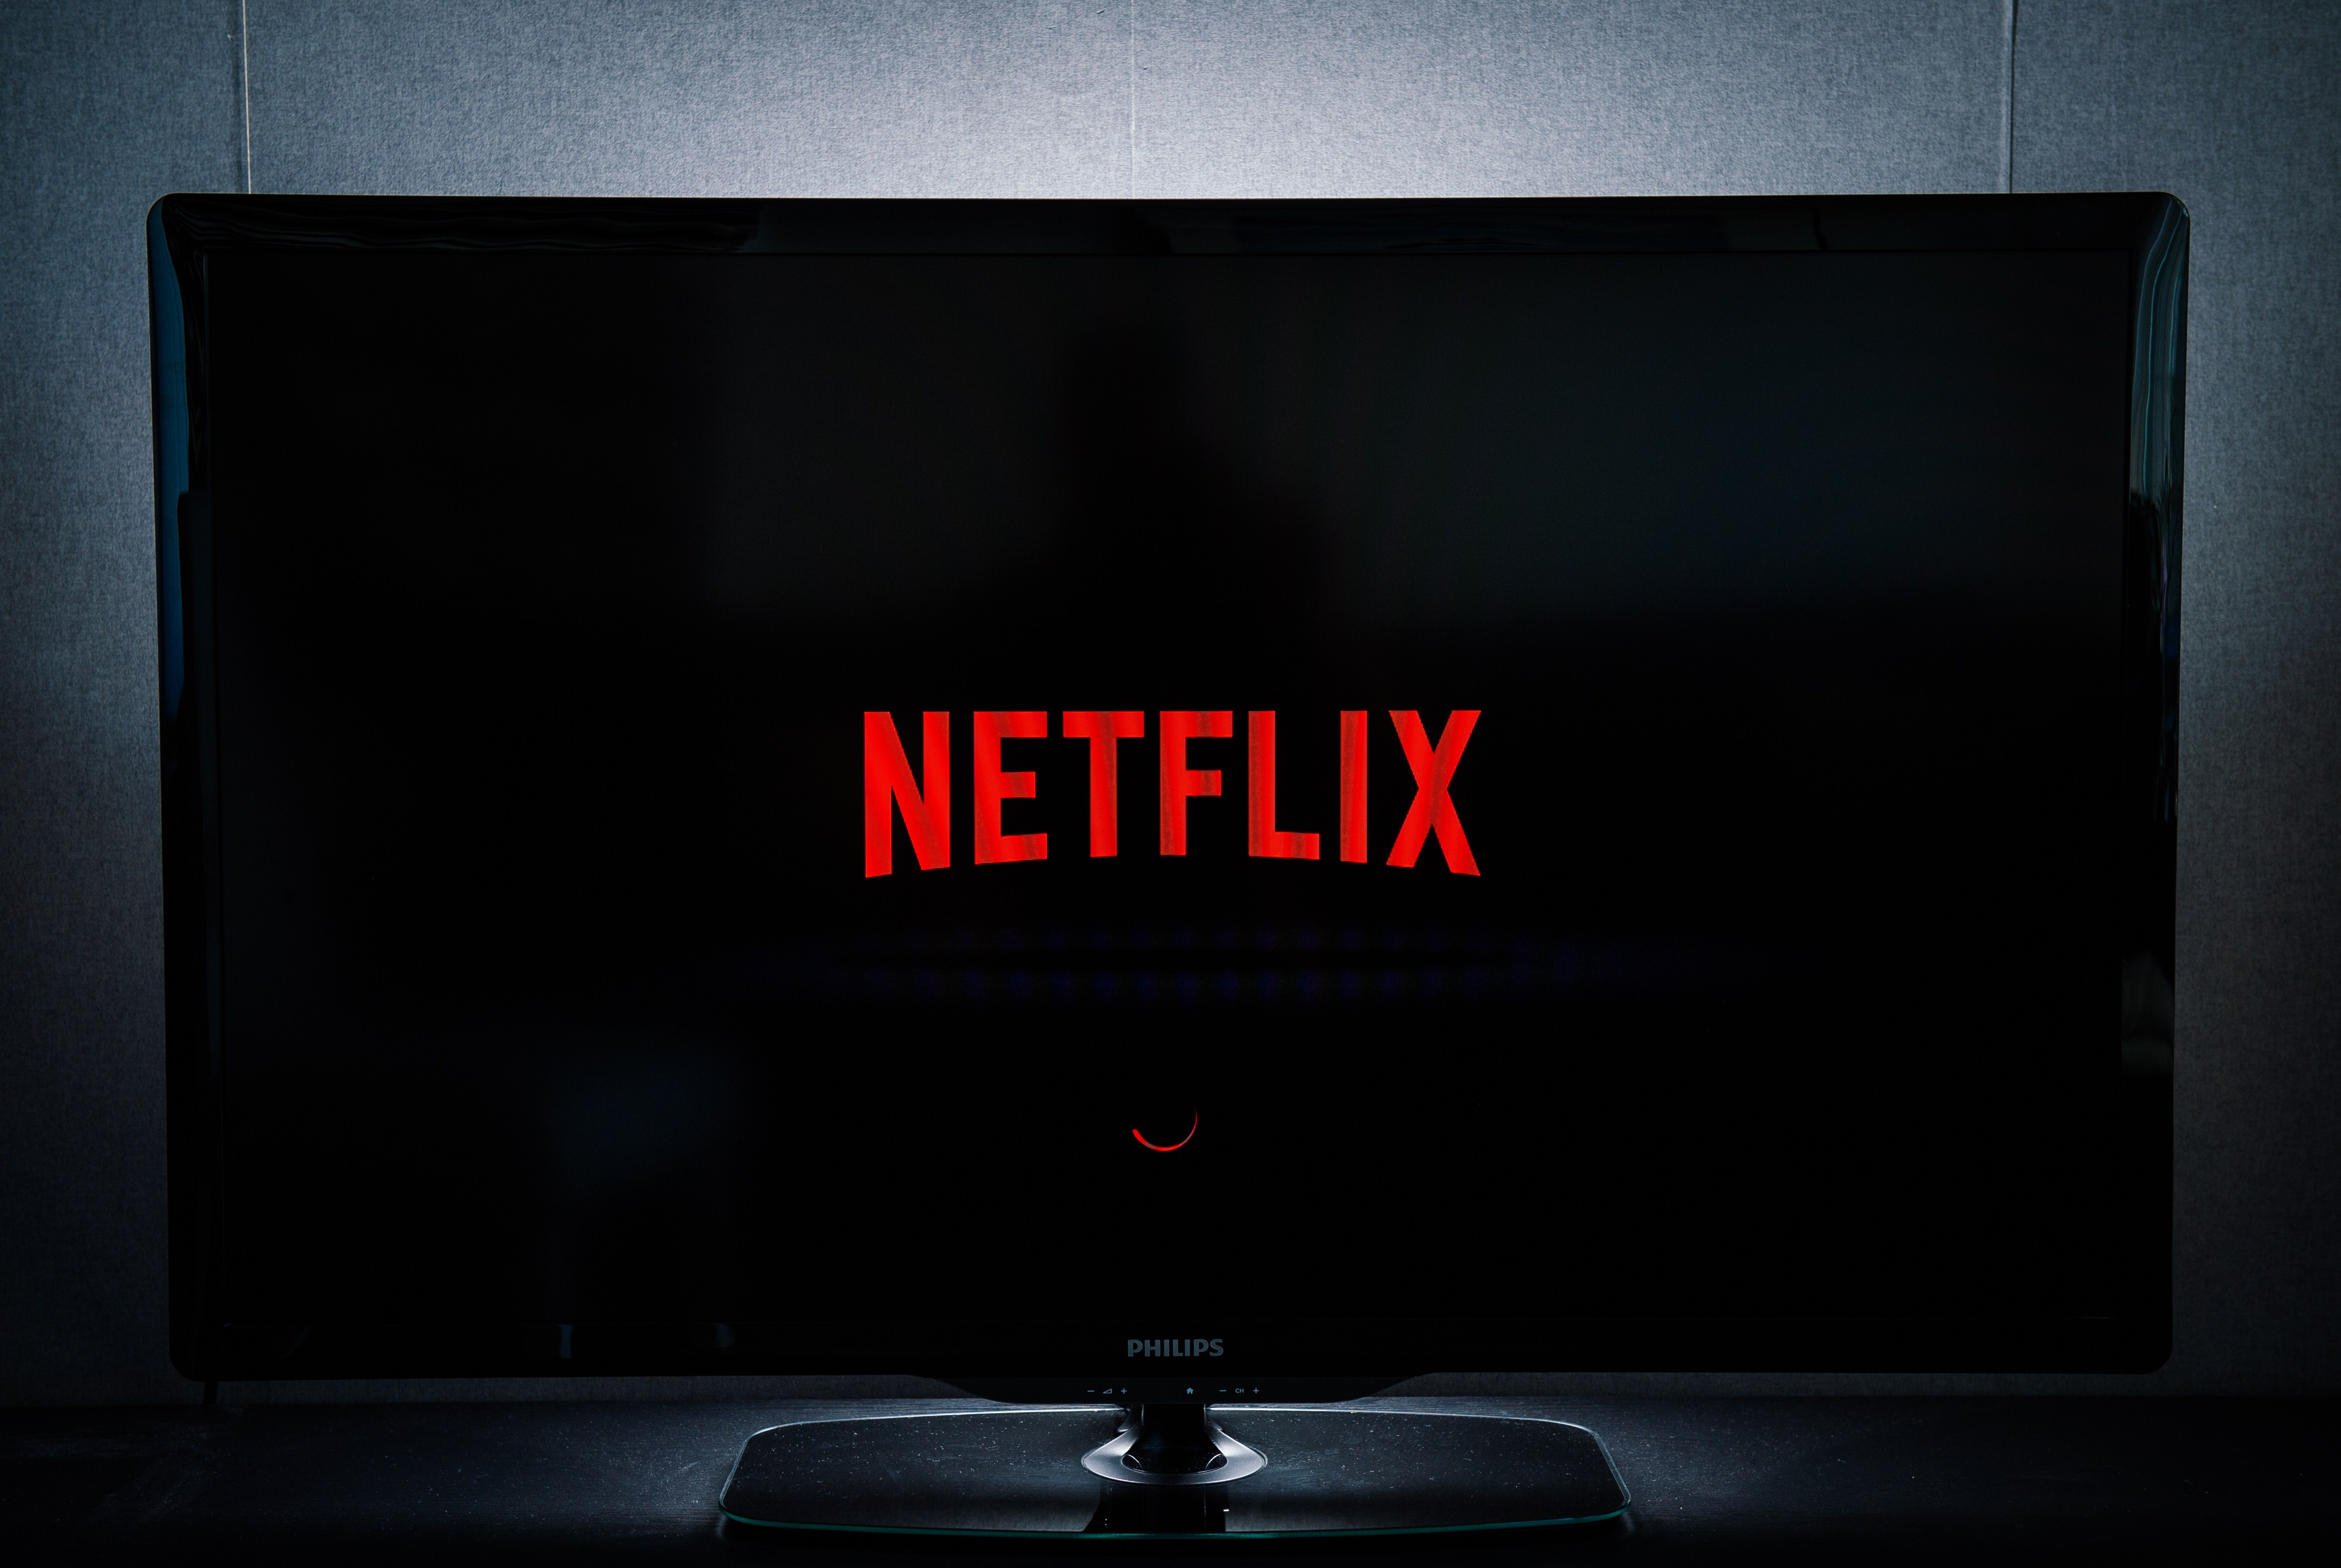 The Netflix logo on a tv screen